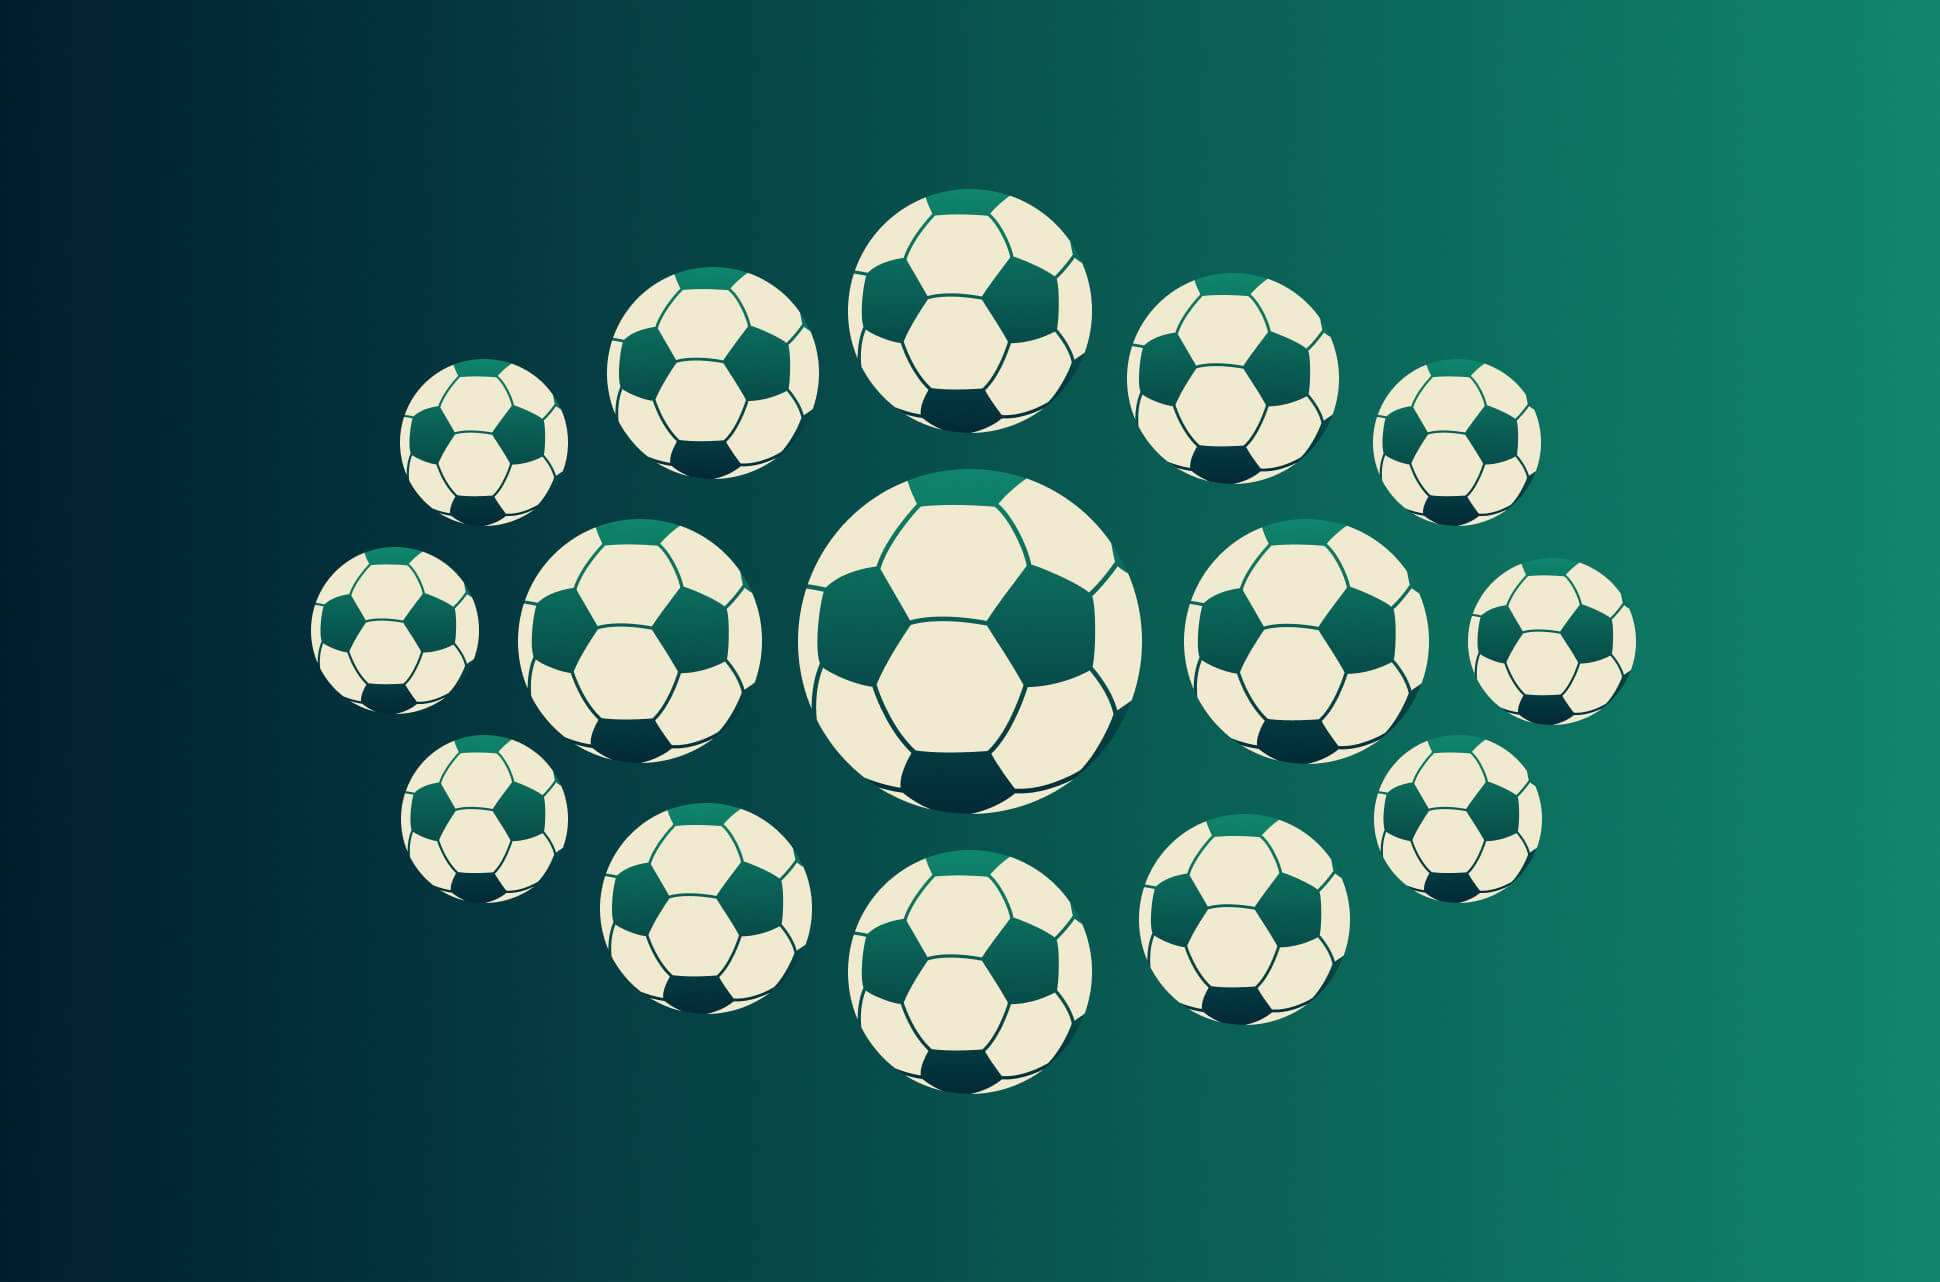 Assistir Copa do Mundo FIFA: VPN para fãs de futebol [Grátis]